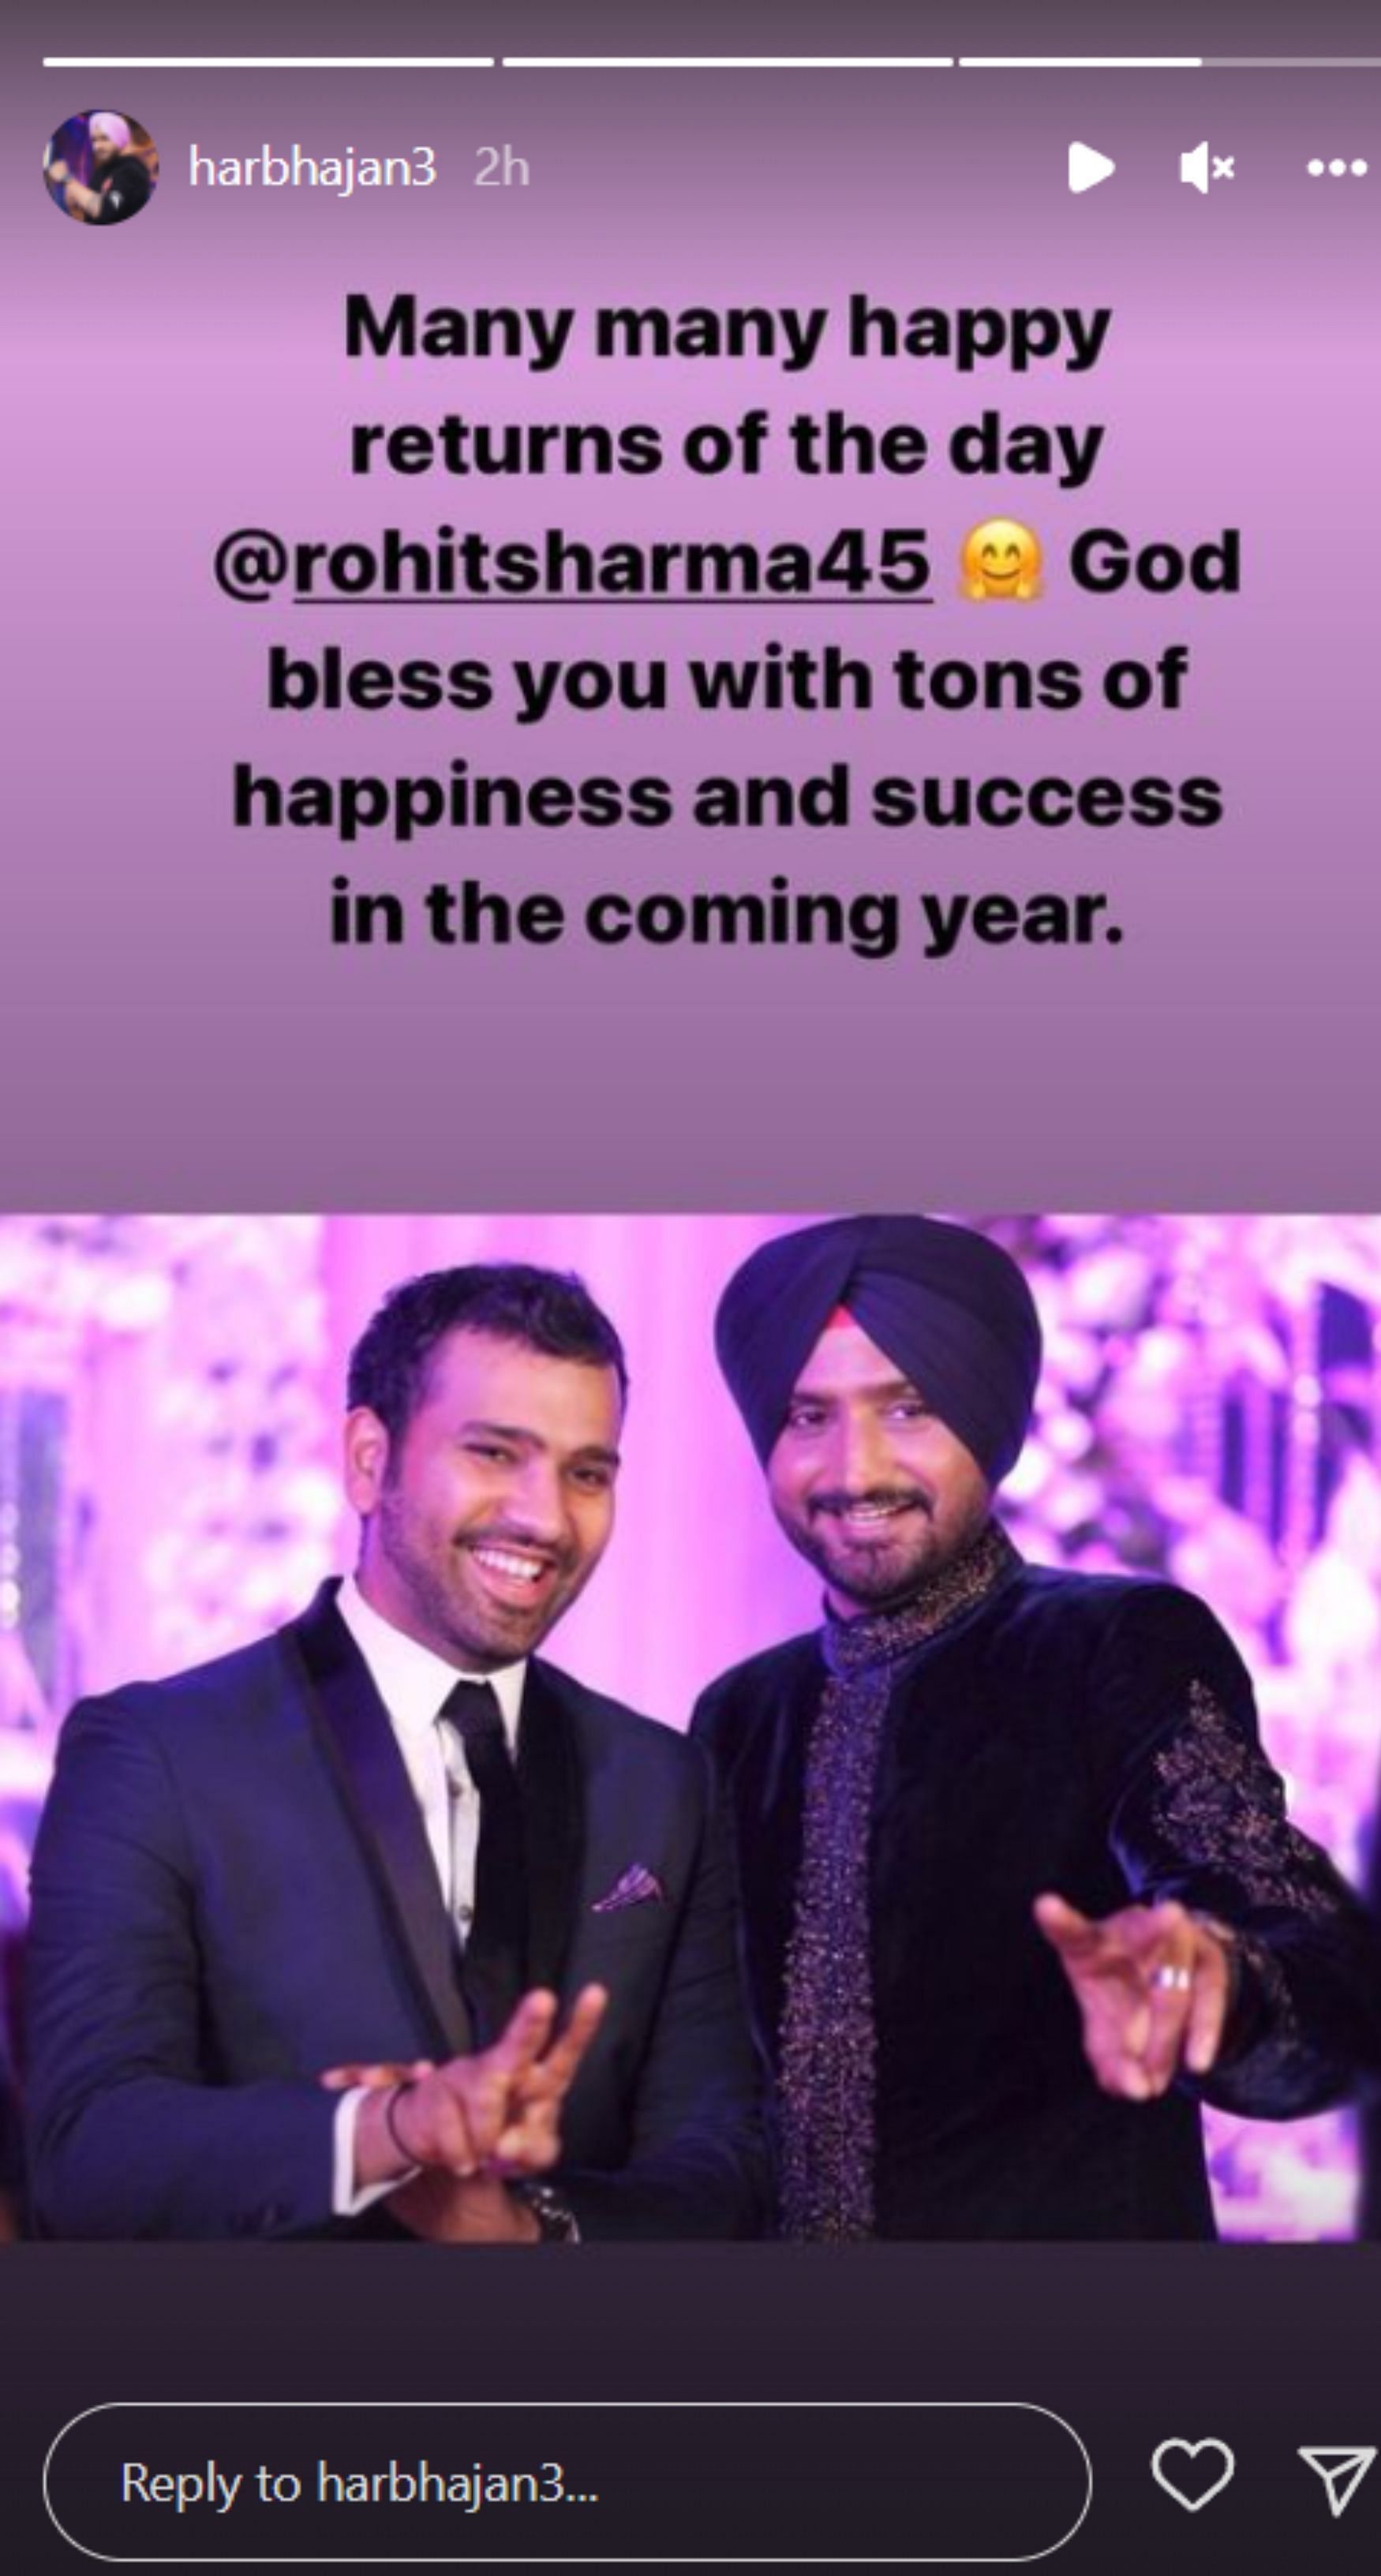 Harbhajan Singh wished via Instagram